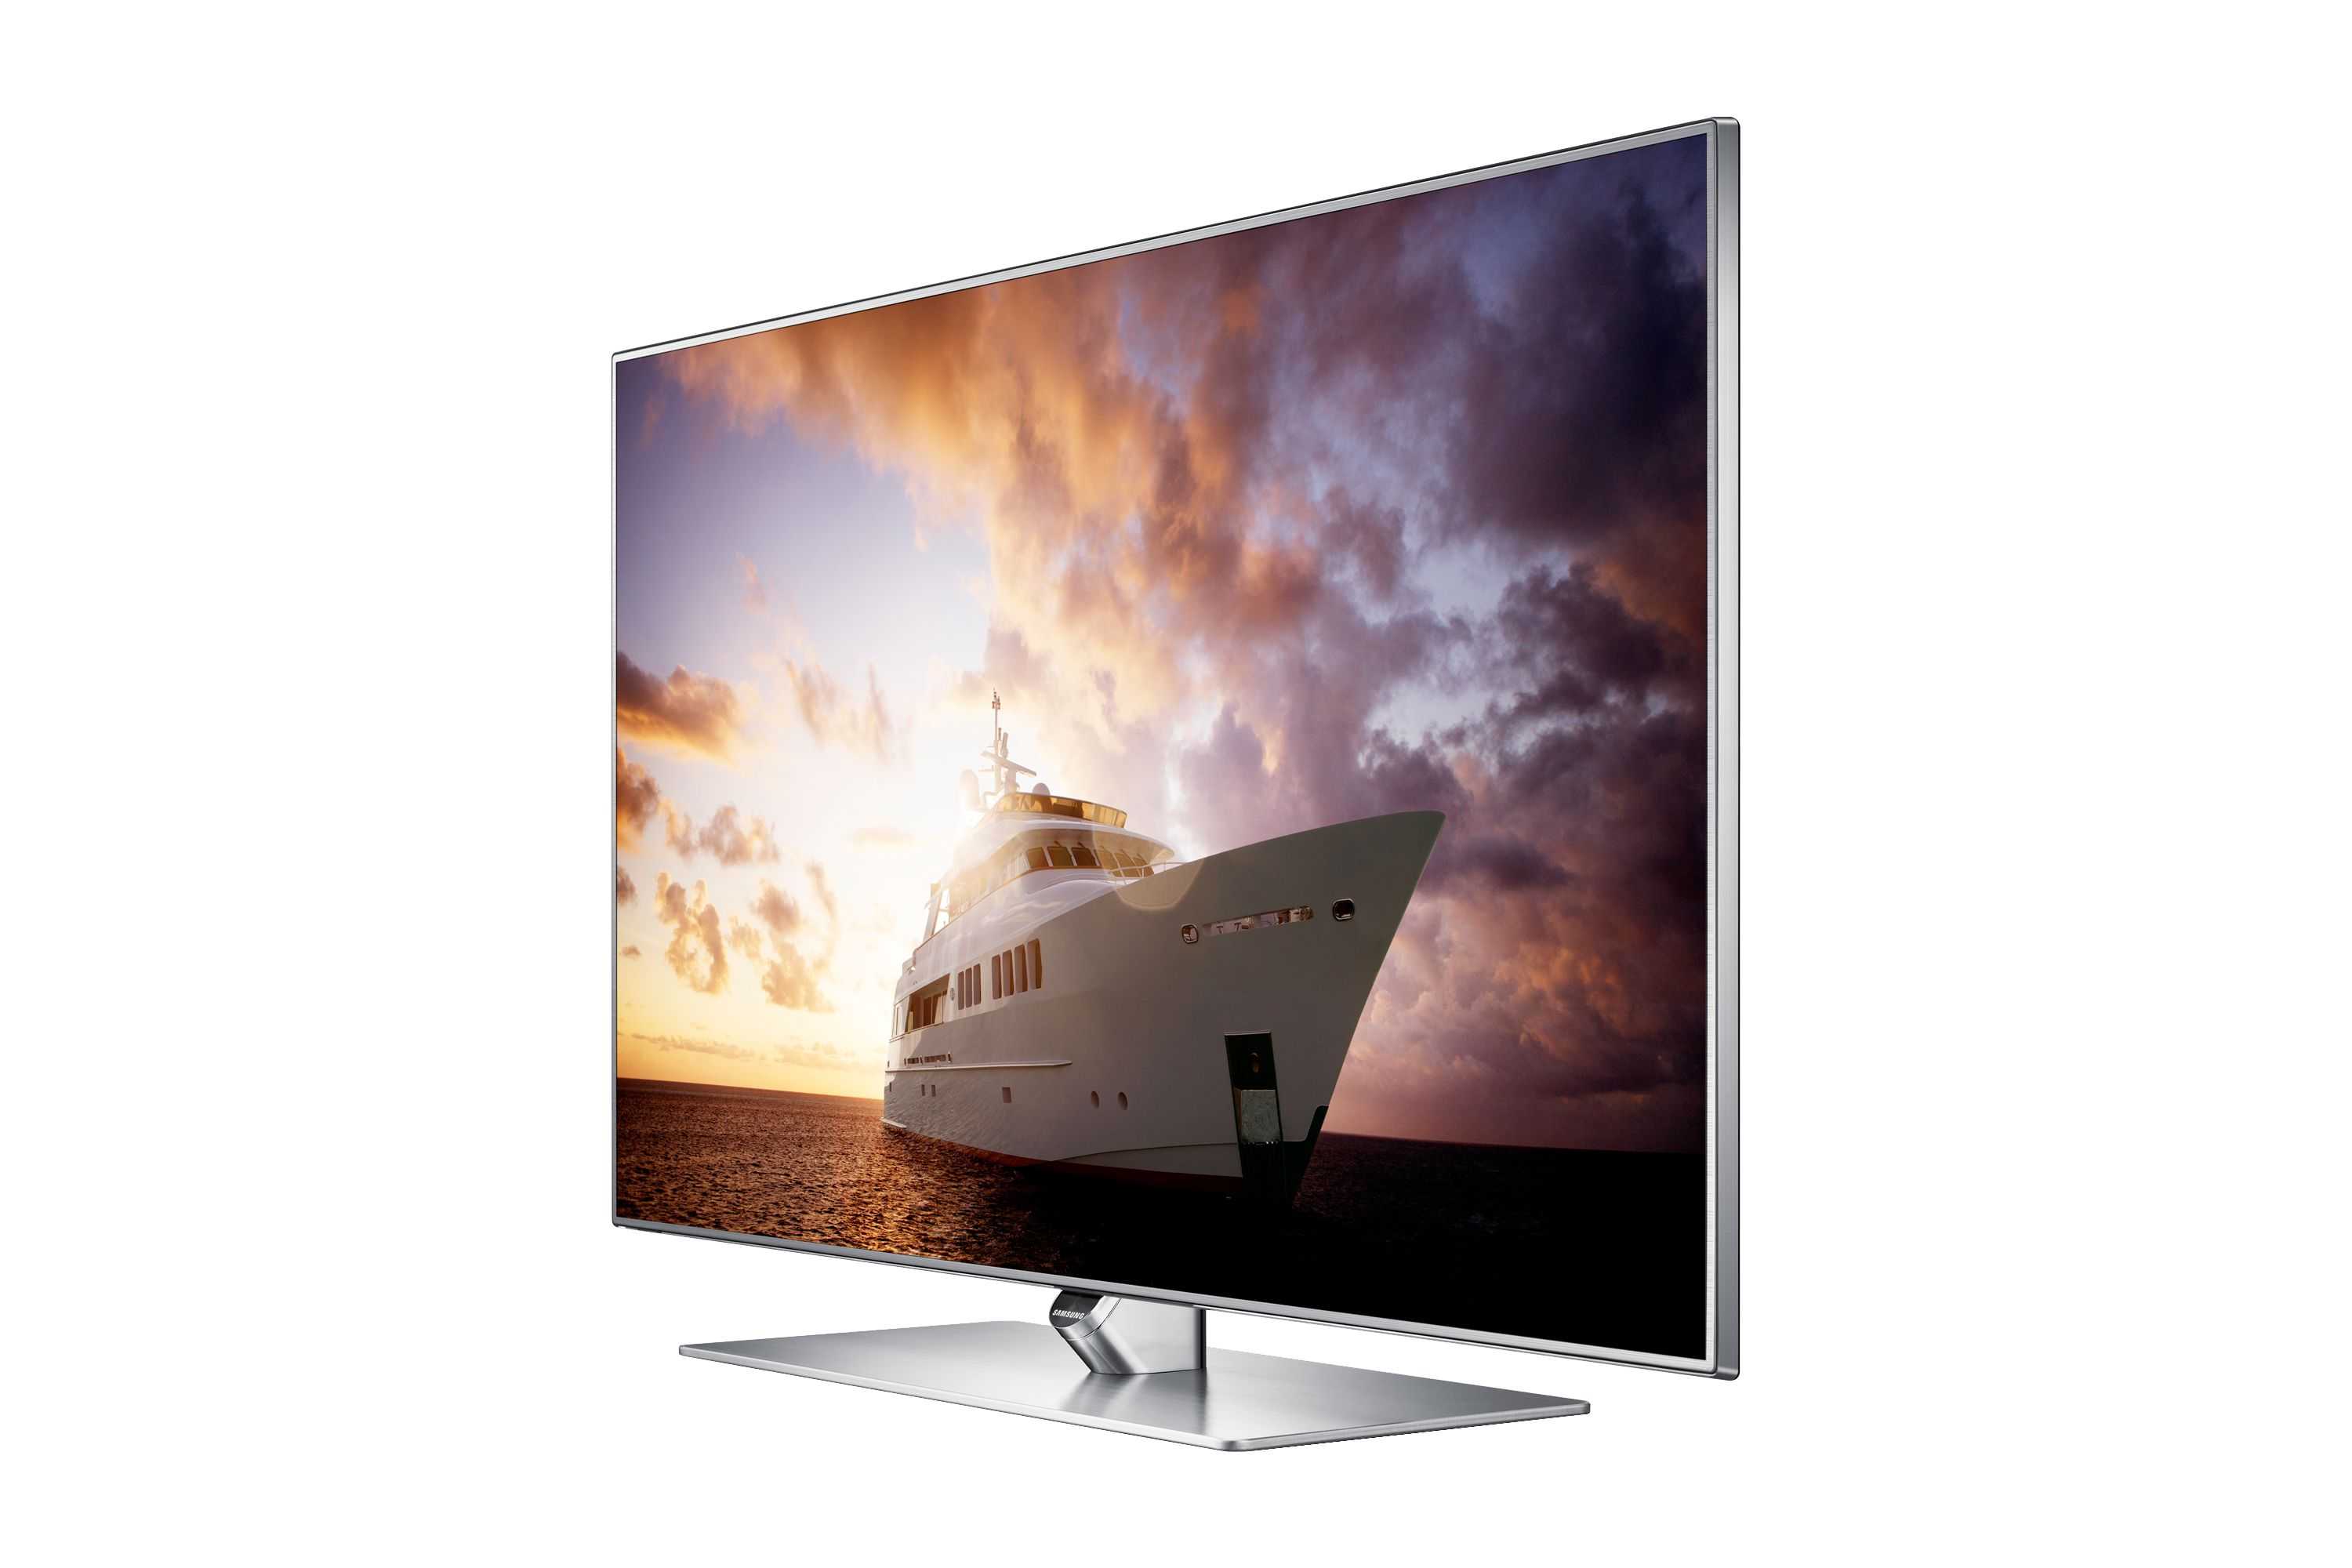 Samsung ue60h7000 - купить , скидки, цена, отзывы, обзор, характеристики - телевизоры